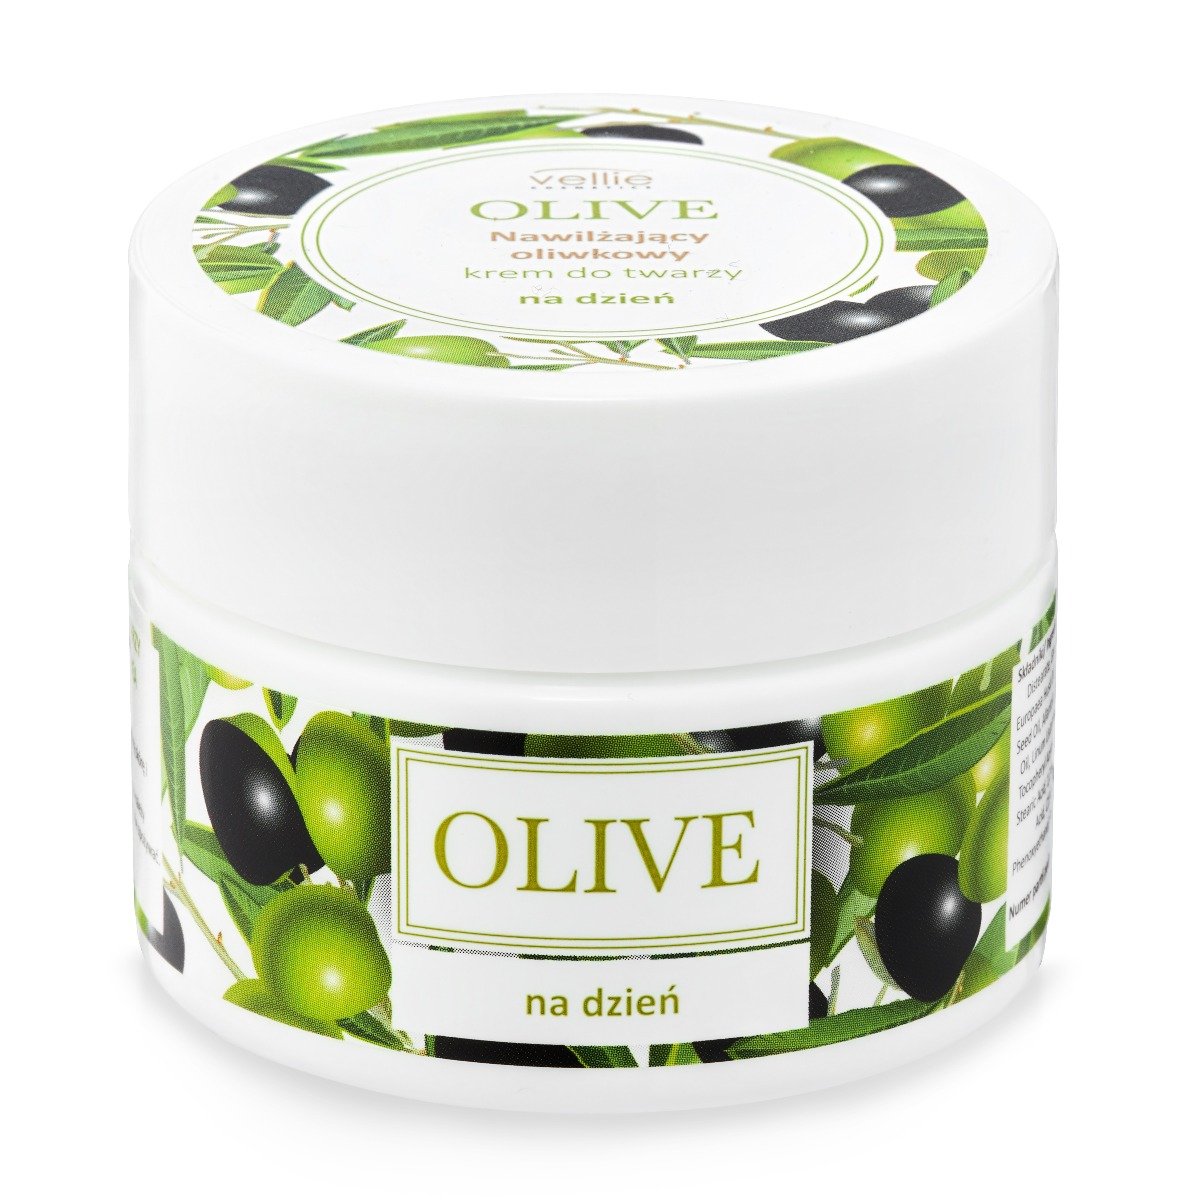 Vellie, Olive, Nawilżający oliwkowy krem do twarzy na dzień, 50 ml